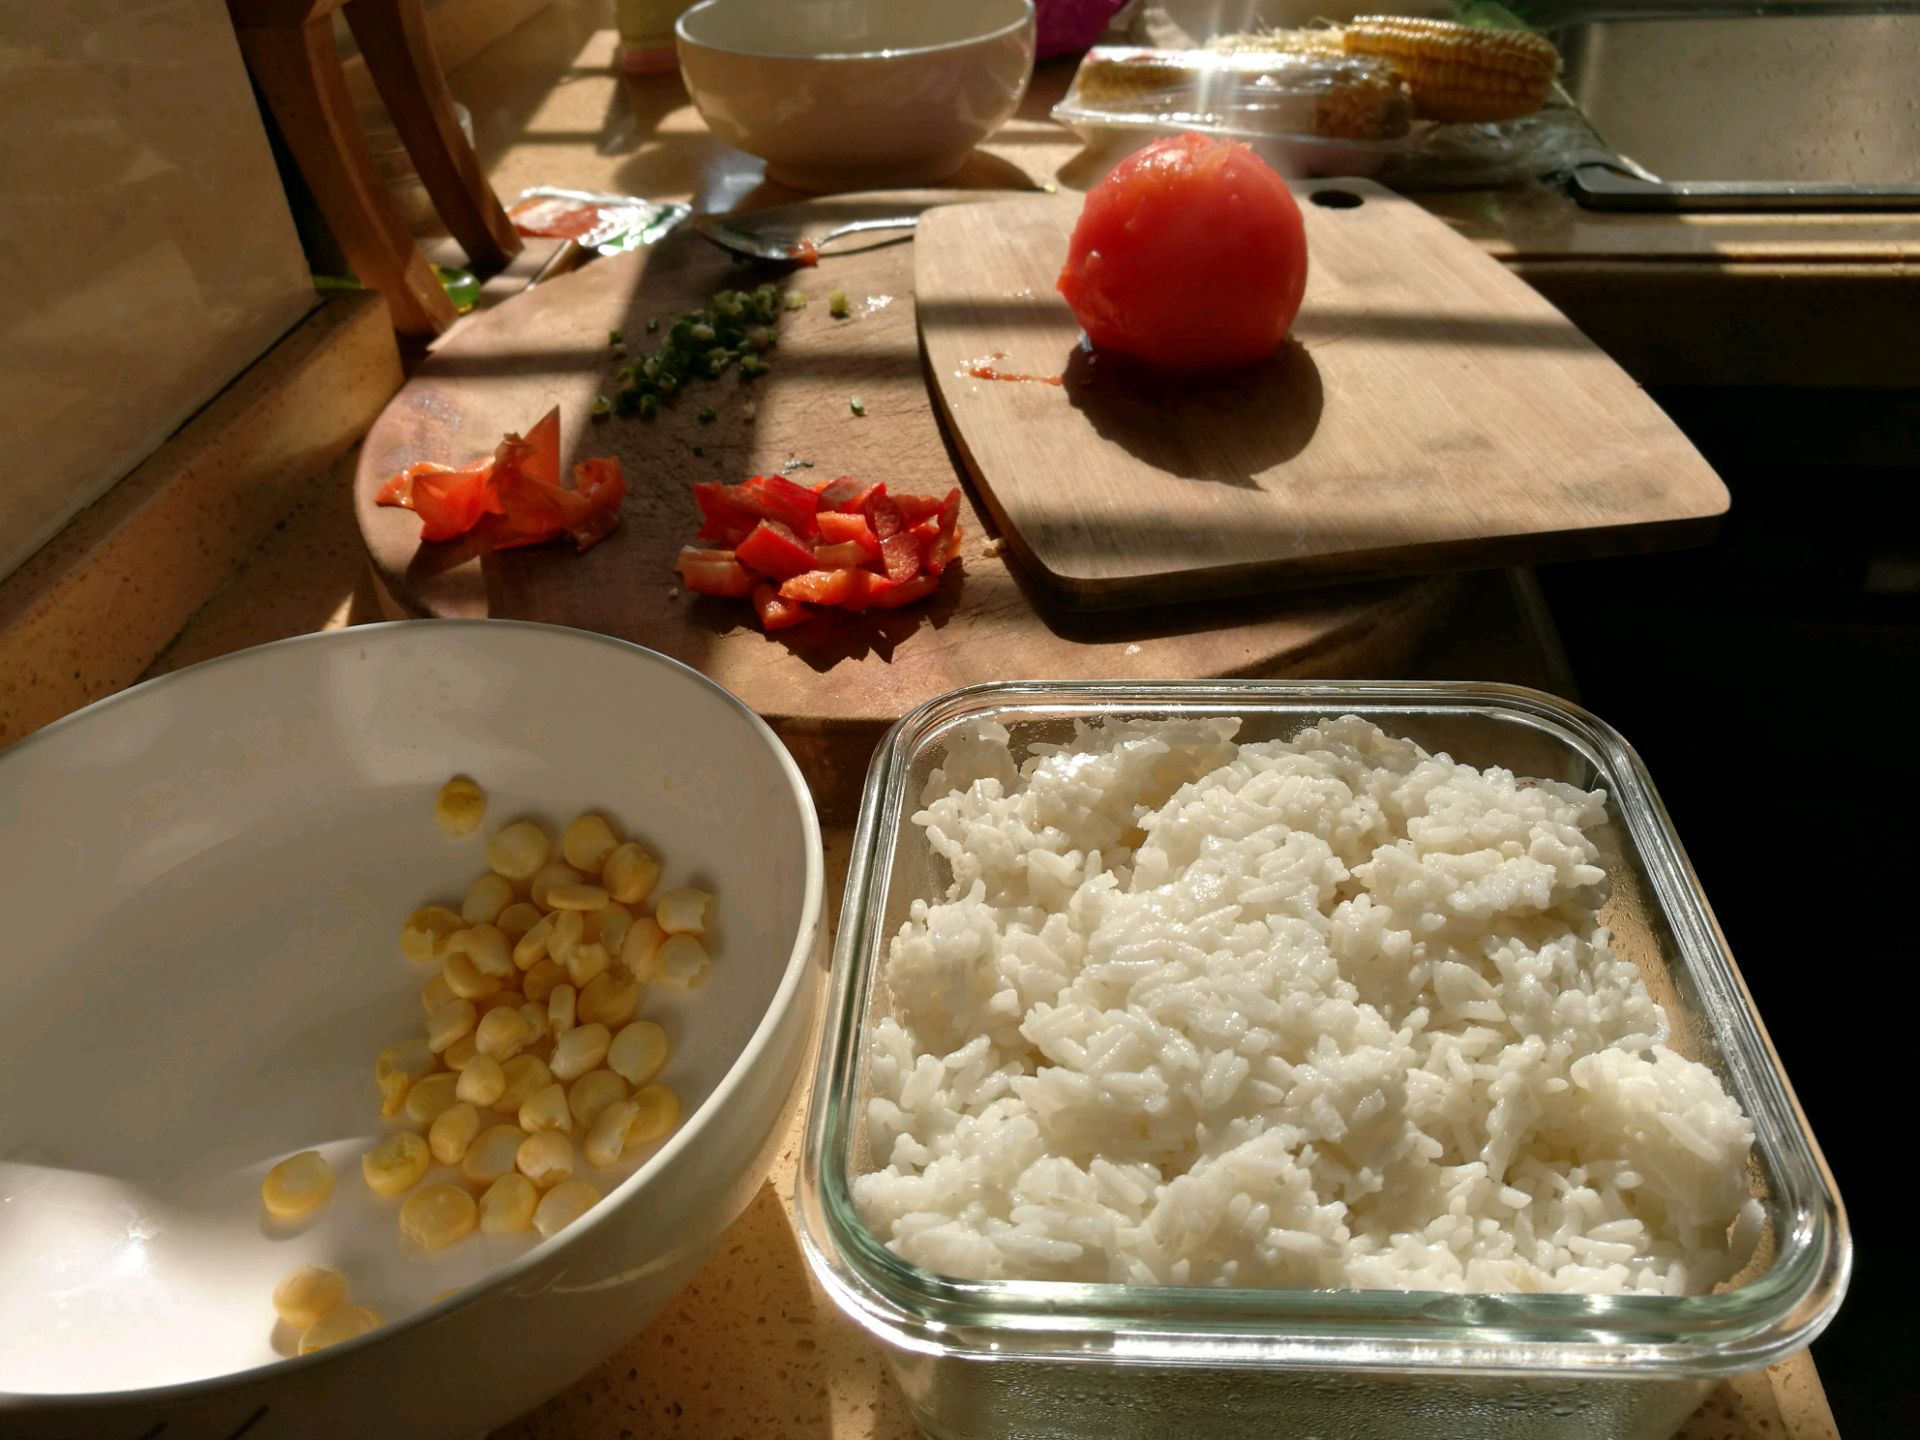 米饭中午西红柿鸡蛋盖饭室内盖饭摄影图配图高清摄影大图-千库网